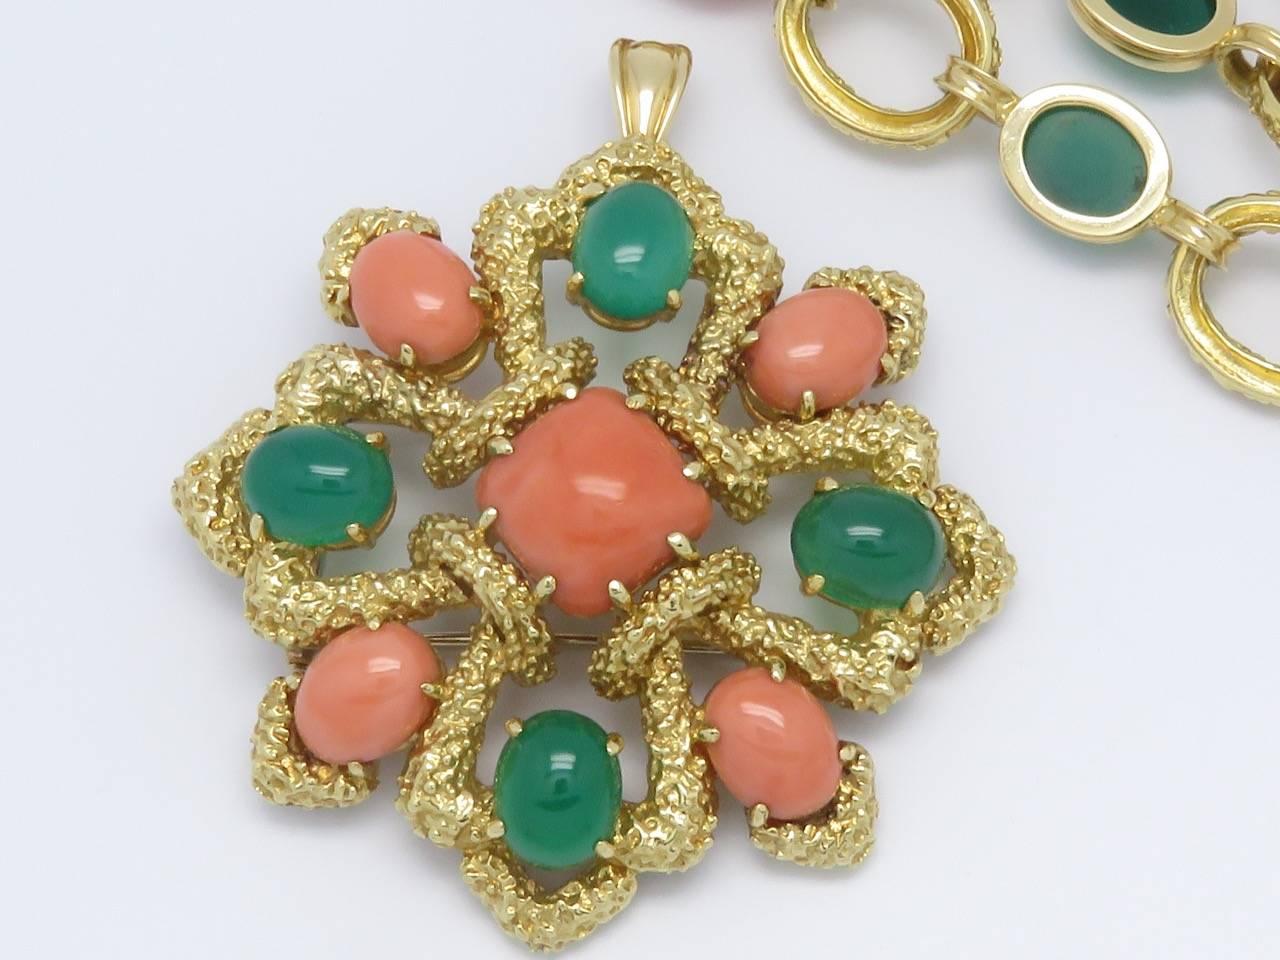 French Cut Van Cleef & Arpels Vintage Delphe Coral Agate Gold Necklace Bracelet Brooch For Sale